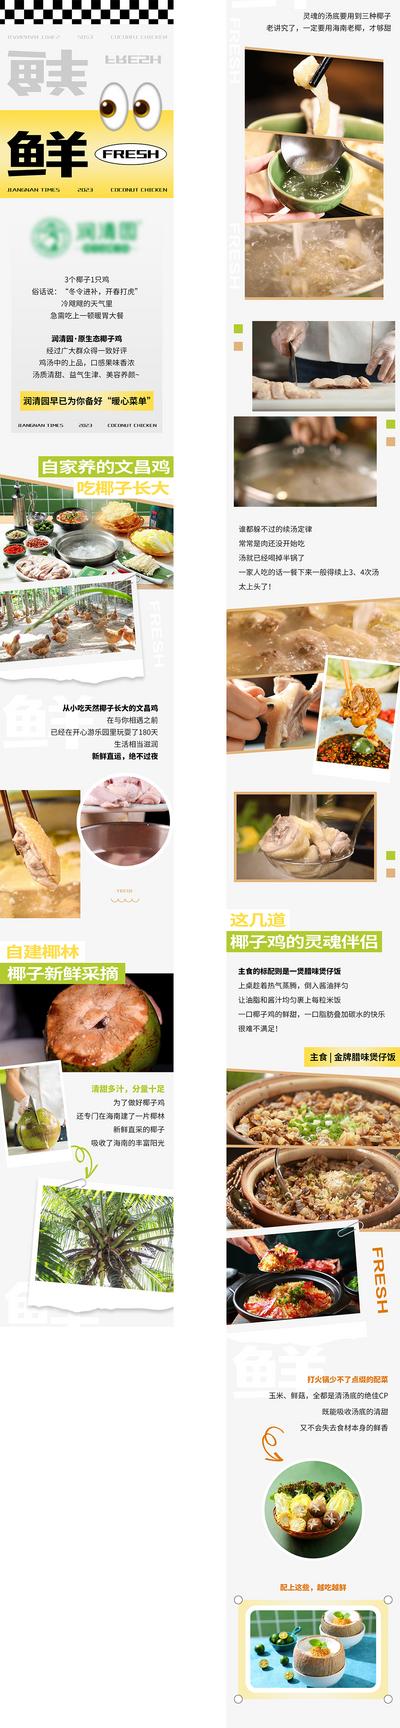 南门网 广告 海报 餐饮 椰子鸡 美食 长图 推文 商场 购物 介绍